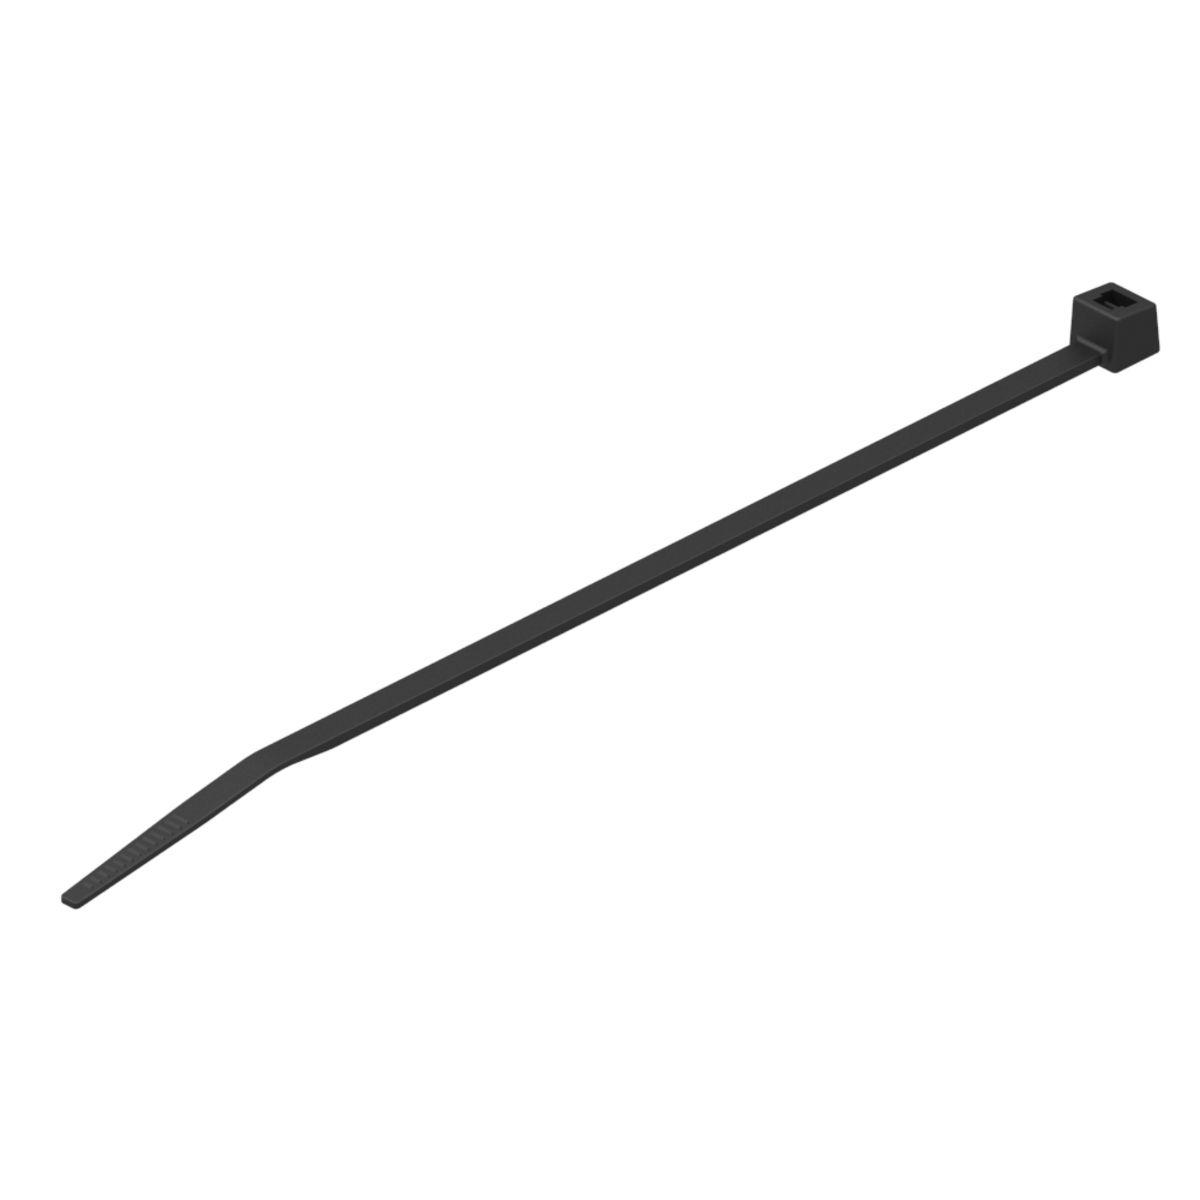 Hubbell CTNT50200D0 Nylon 12 Cable Tie, Tensile strength: 50 Lbs, Color: Black, 7.50"L, 0.19"W, 2.00" Bundle Dia. 